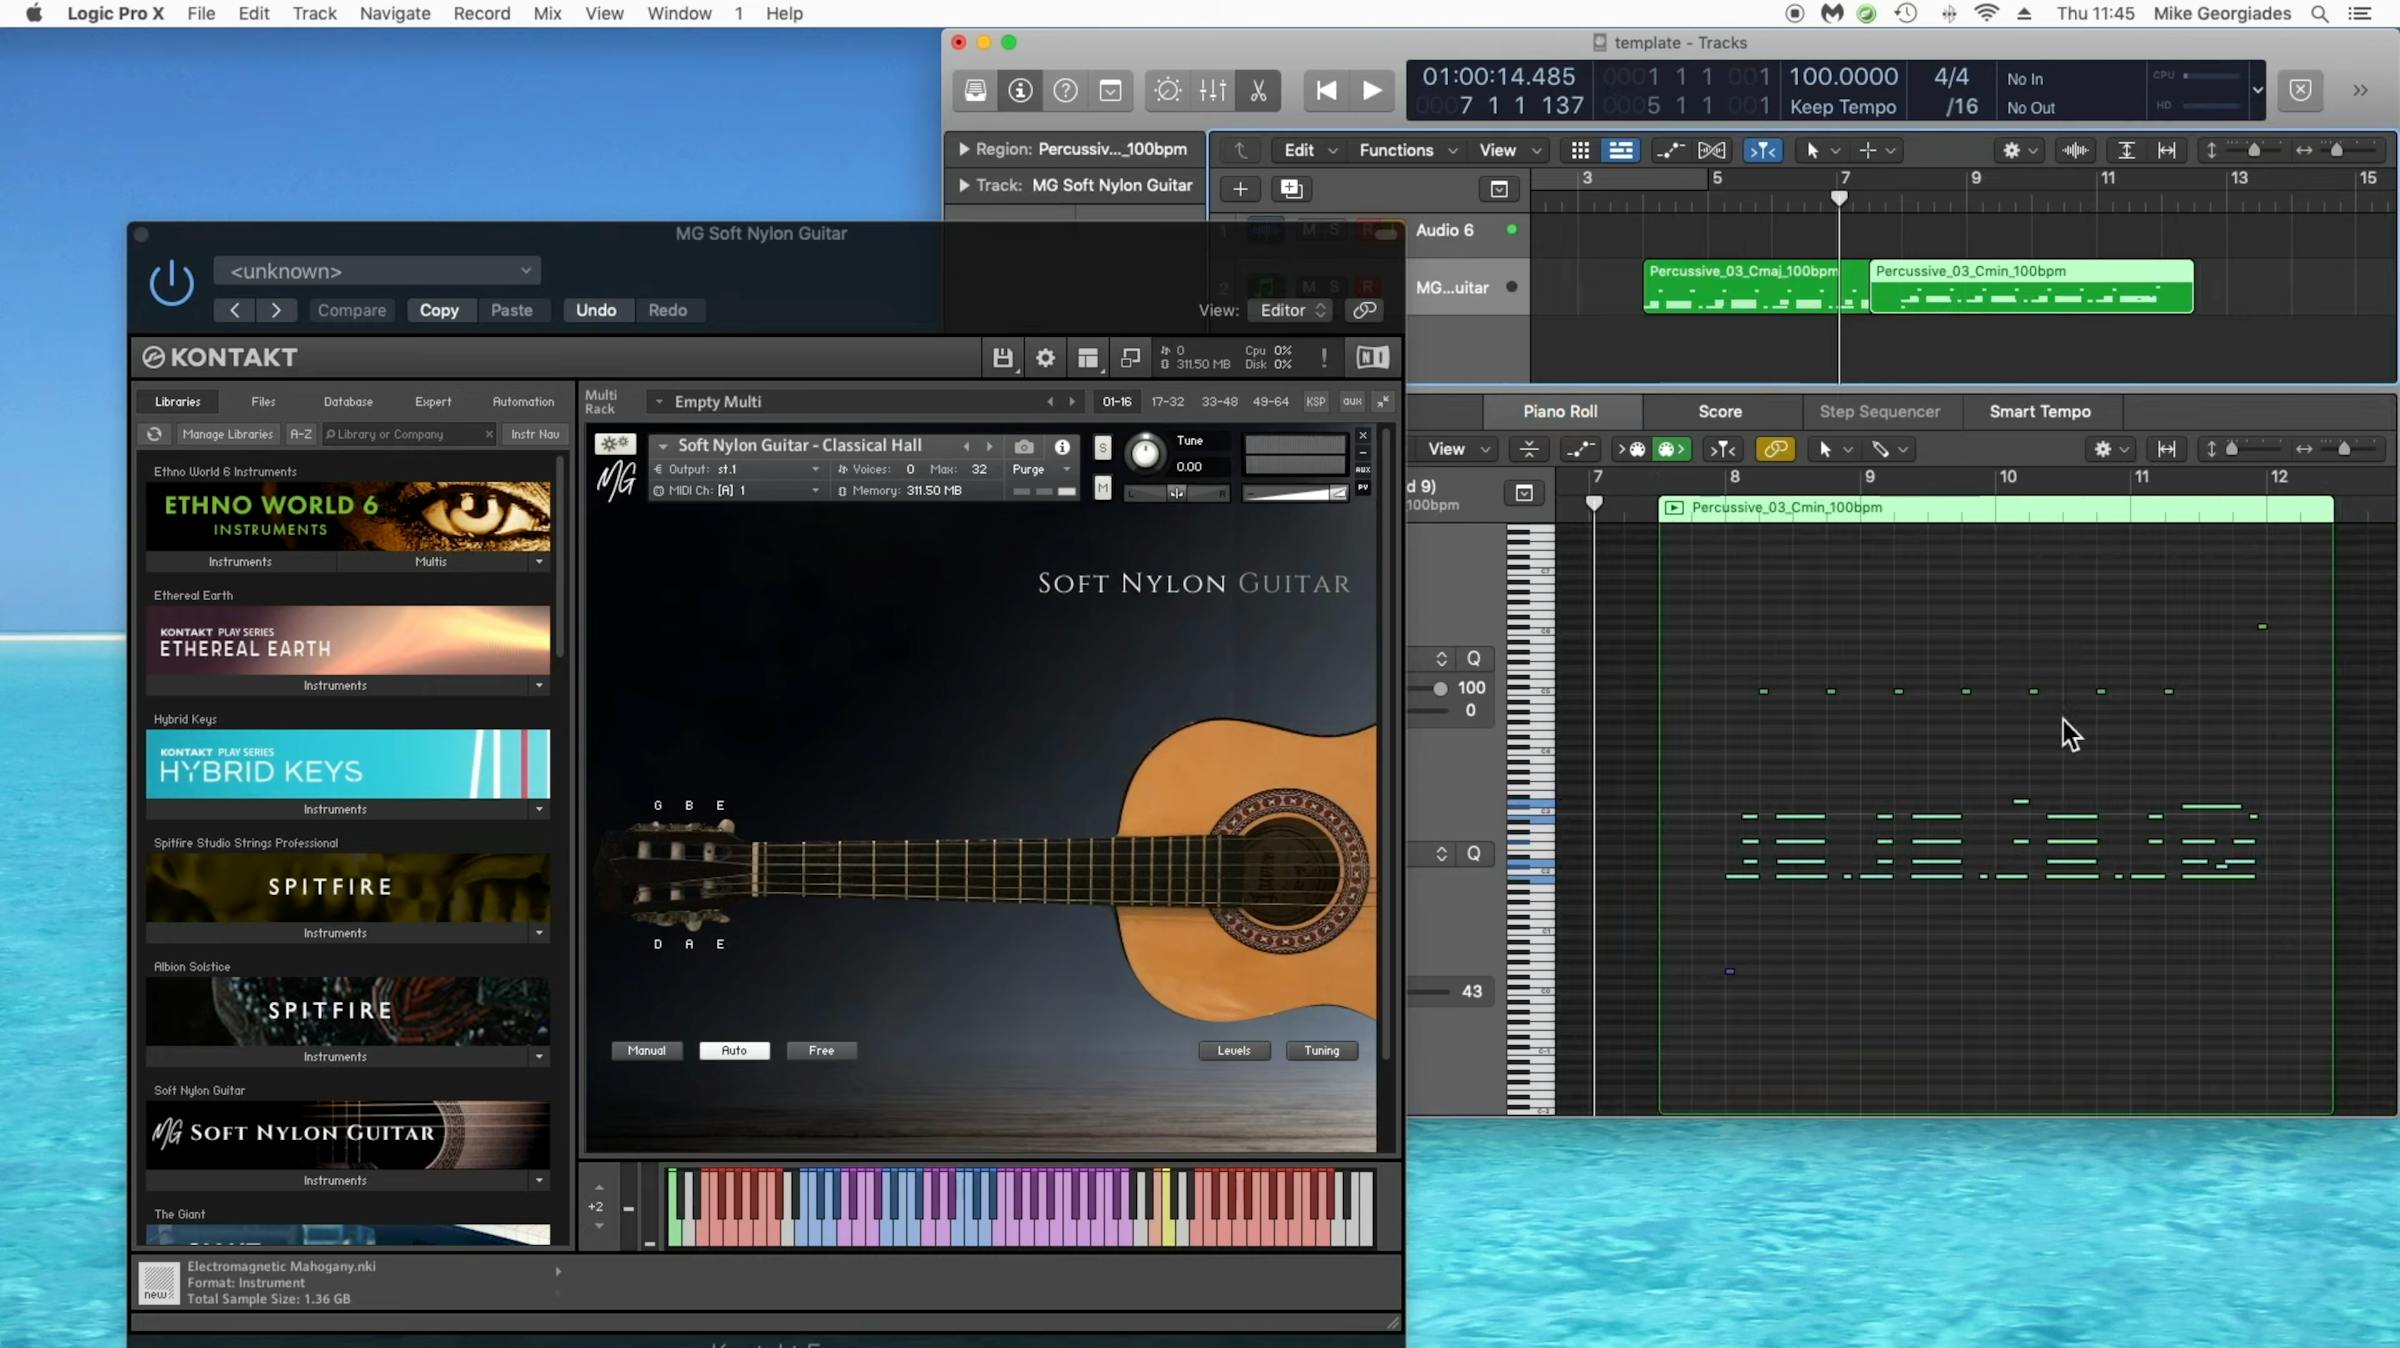 Soft Nylon guitar GUI in Logic Pro X